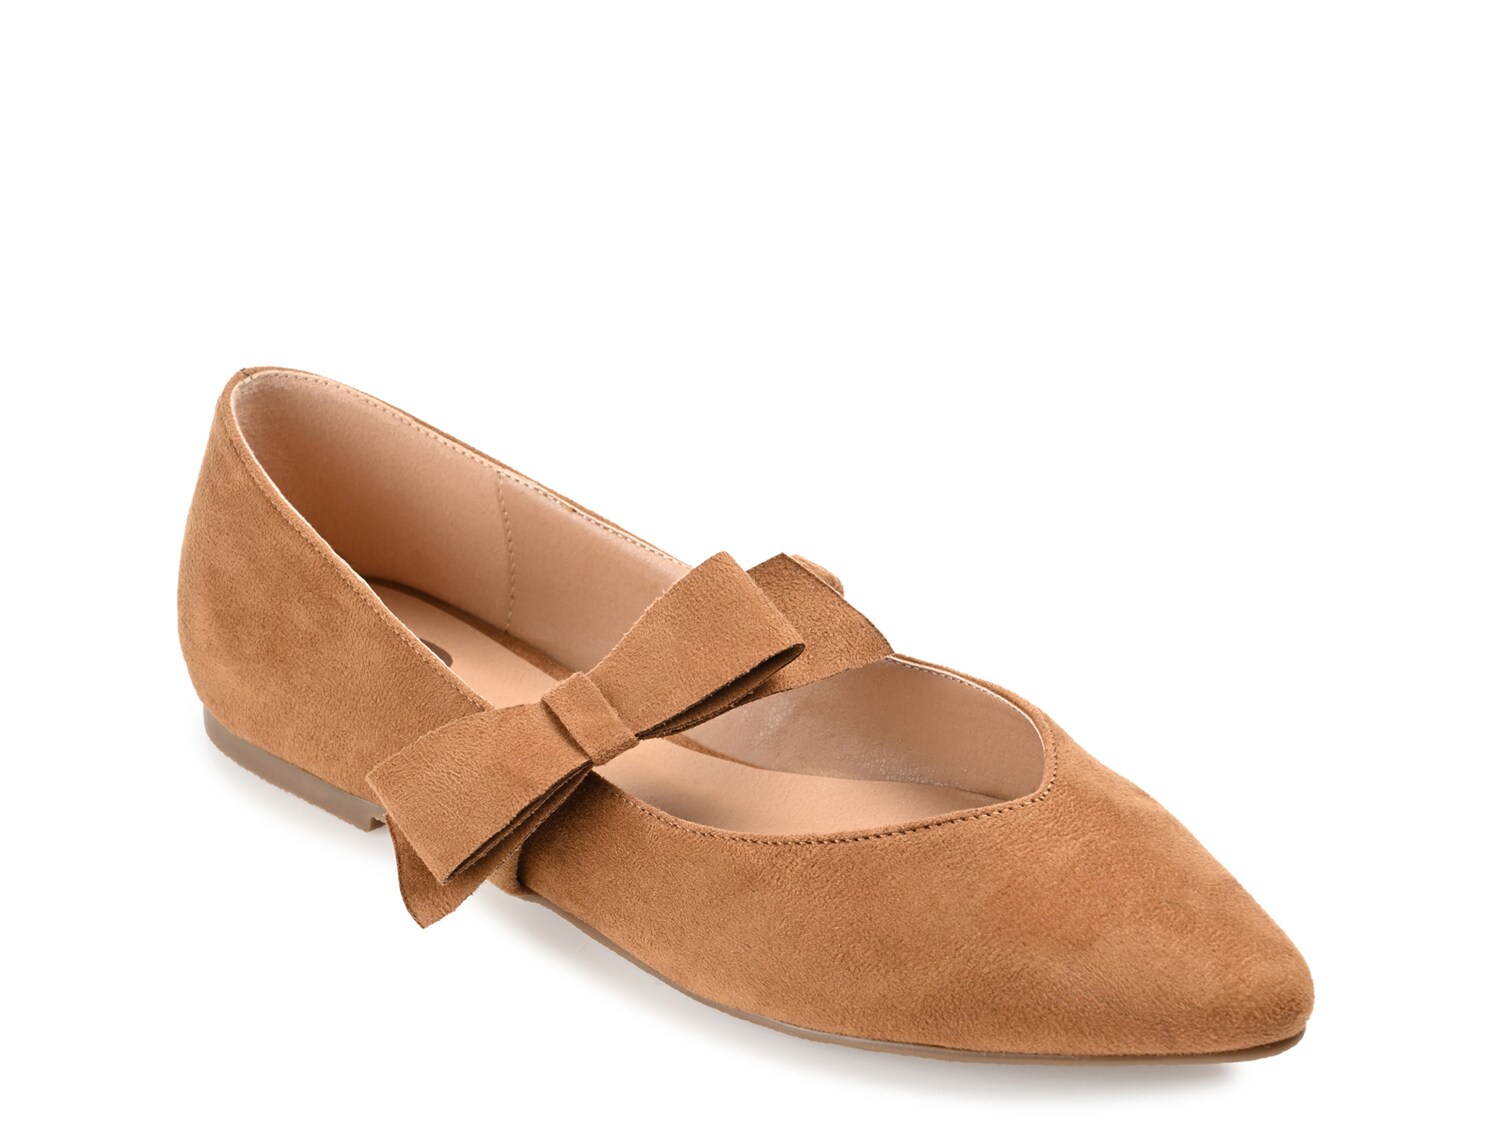 Балетки Journee Collection Aizlynn, коричневый туфли на плоской подошве sas eden comfort mary jane цвет resin